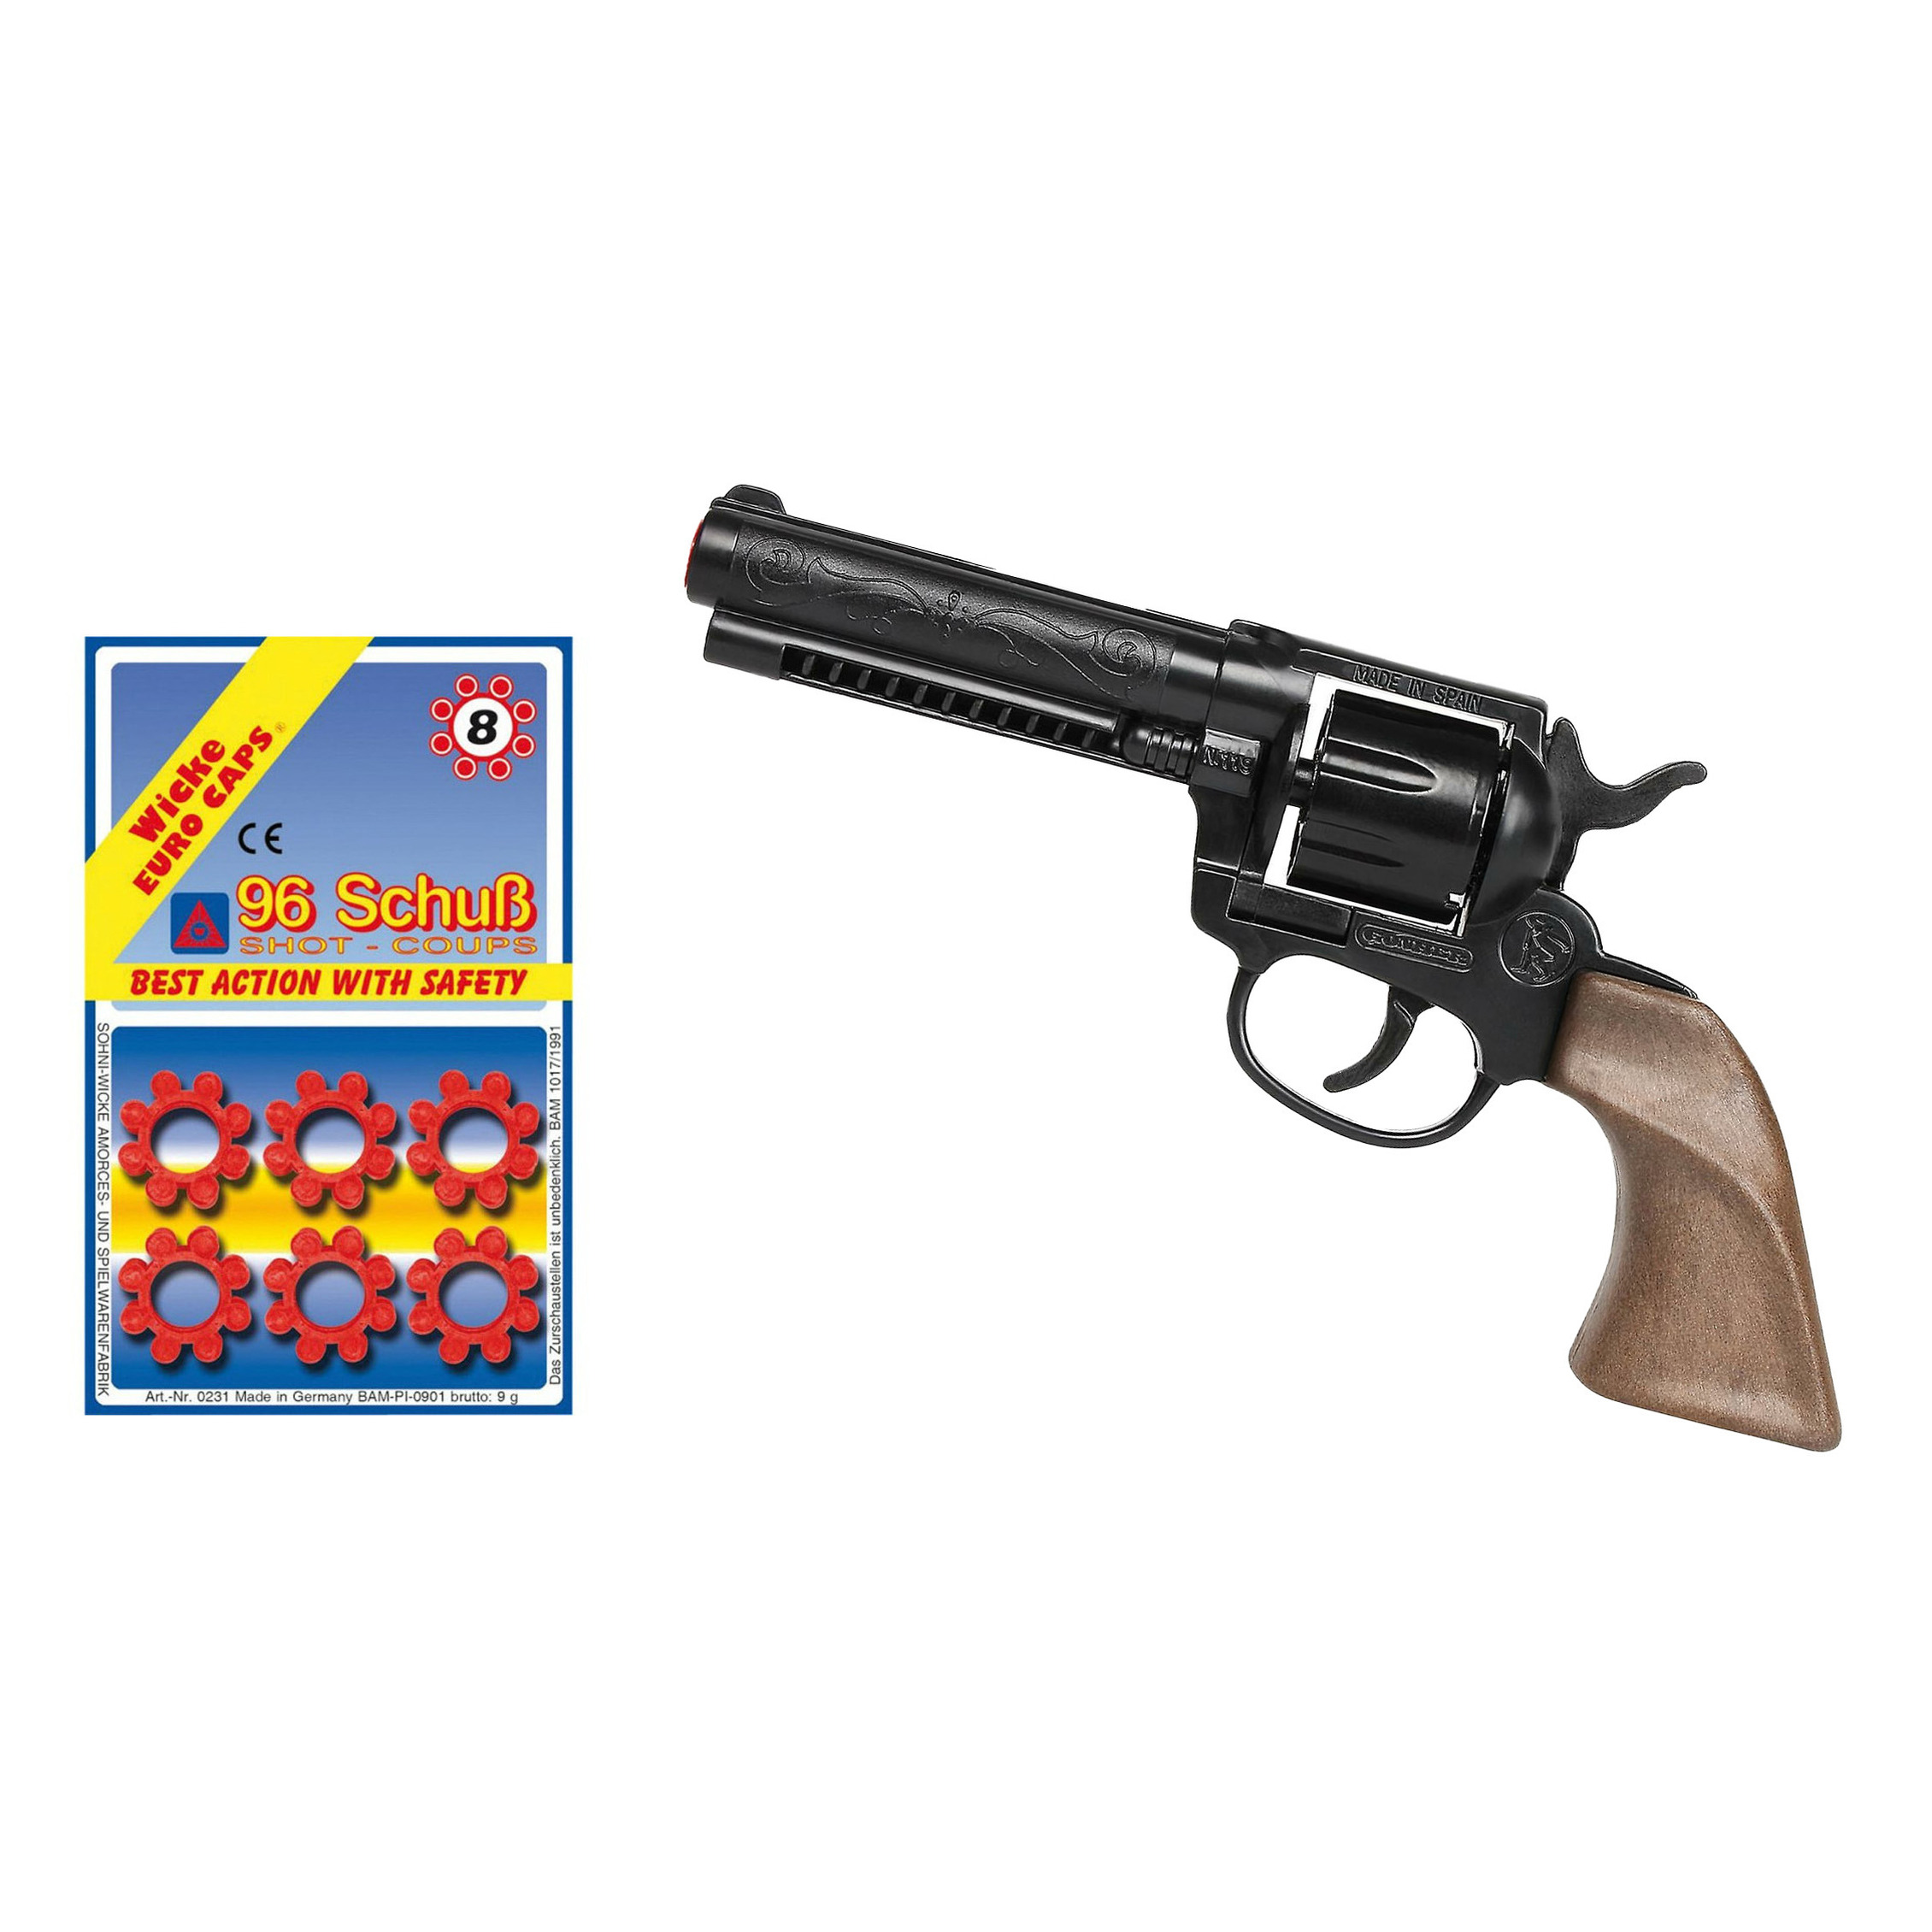 Gohner cowboy verkleed speelgoed revolver-pistool metaal met 12x ringen 8 schots plaffertjes